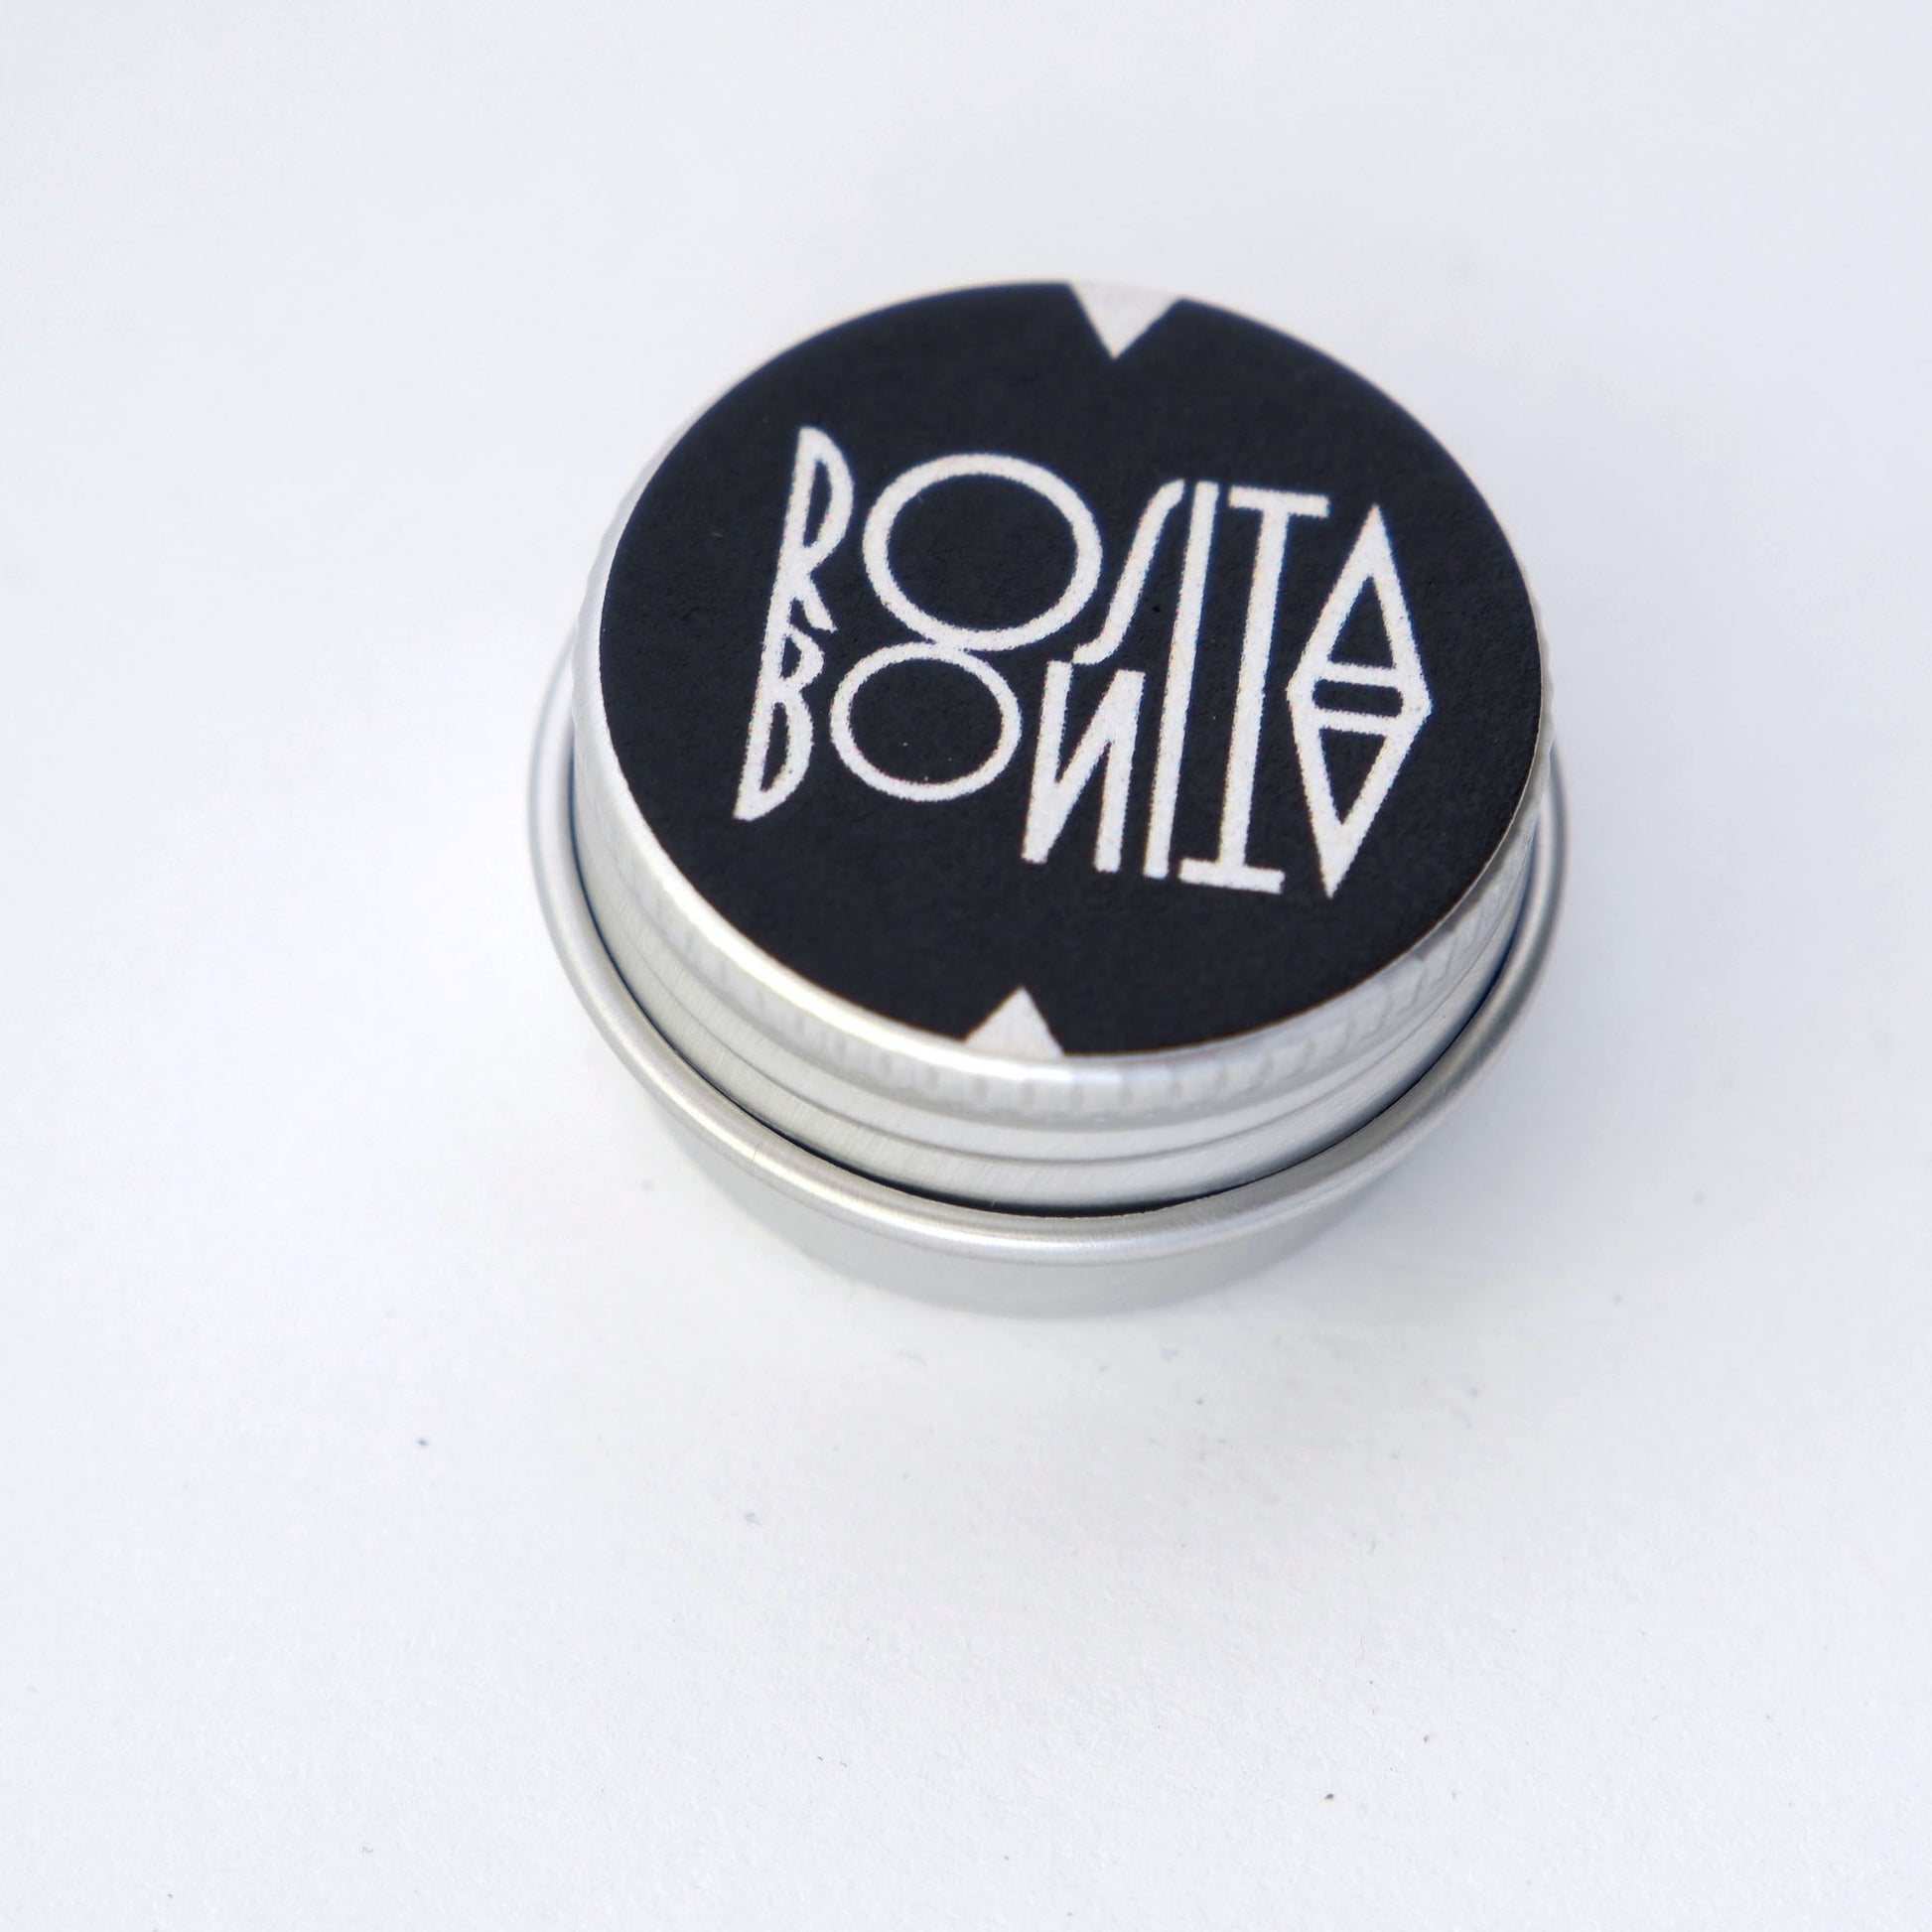 small silver tin with Rosita Bonita logo in Black & White